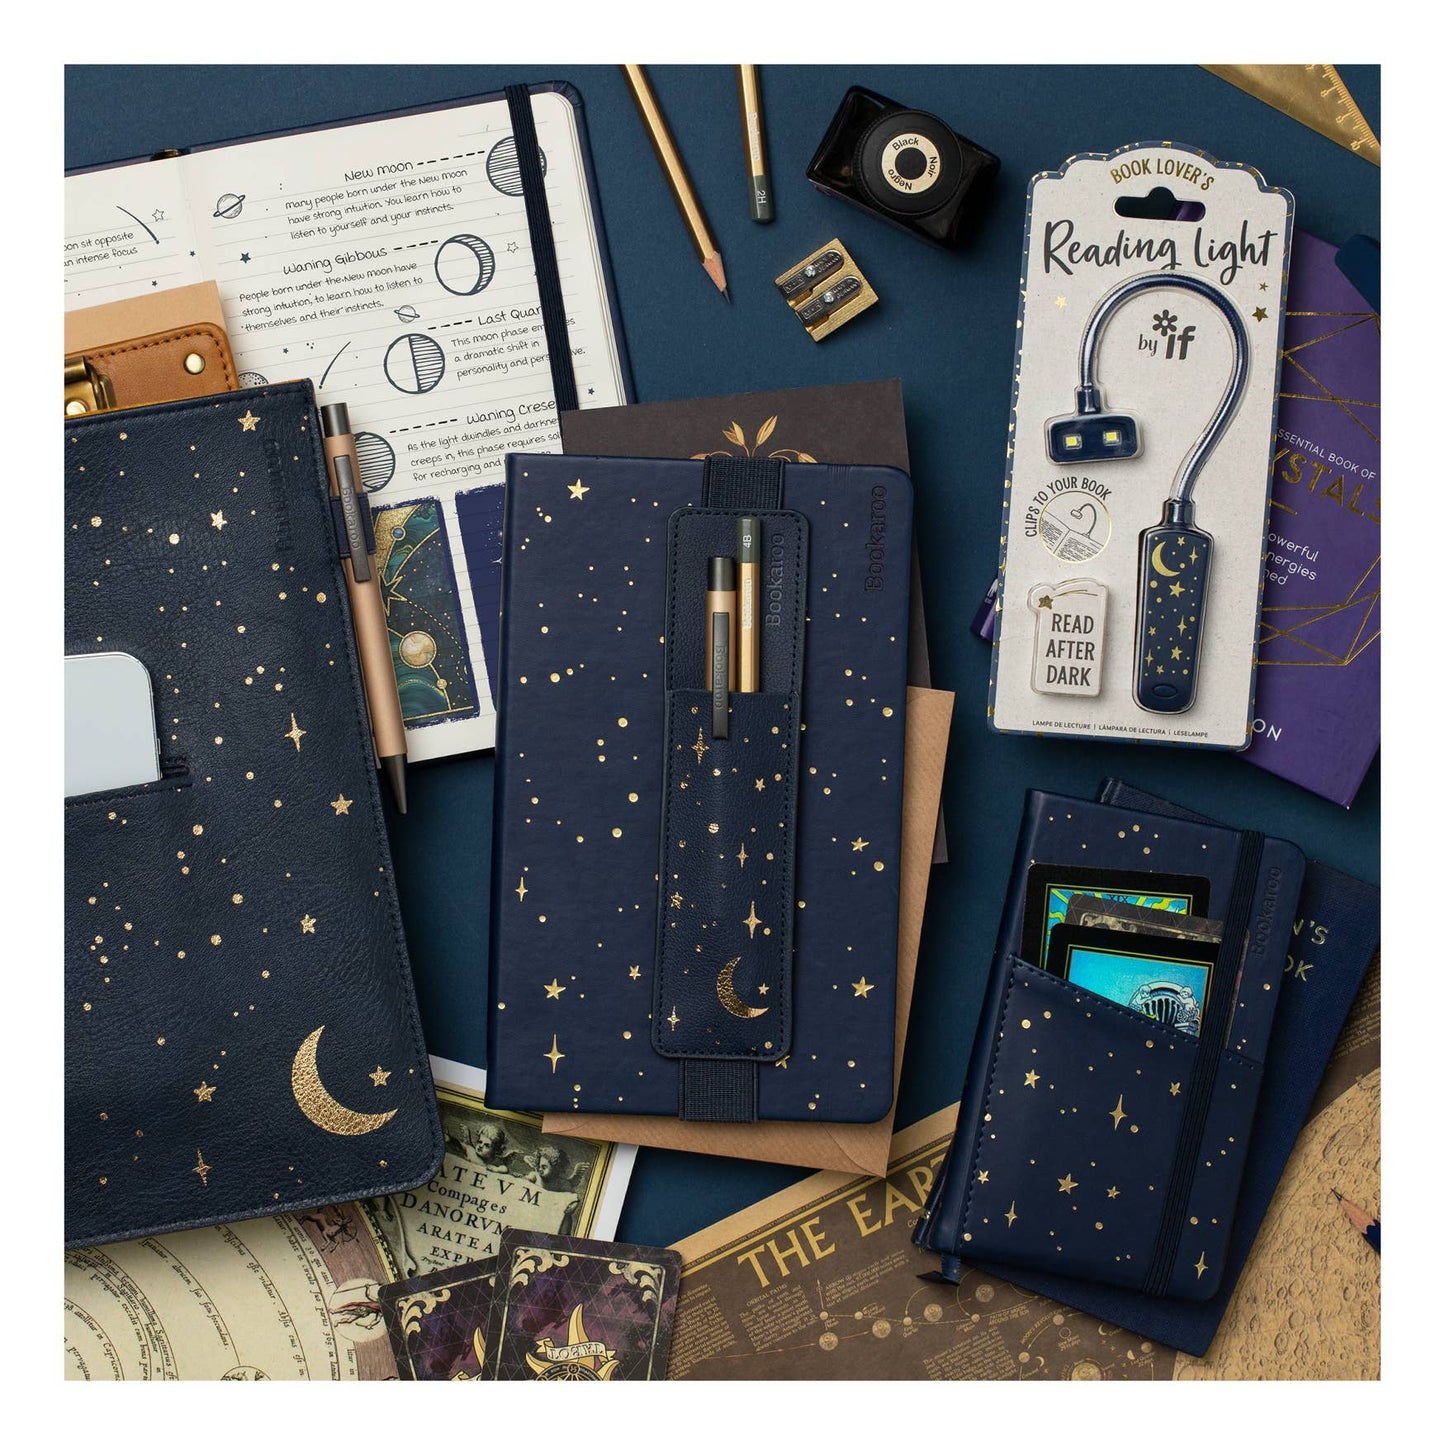 Bookaroo Moon & Stars Stationery: A5 Notebook